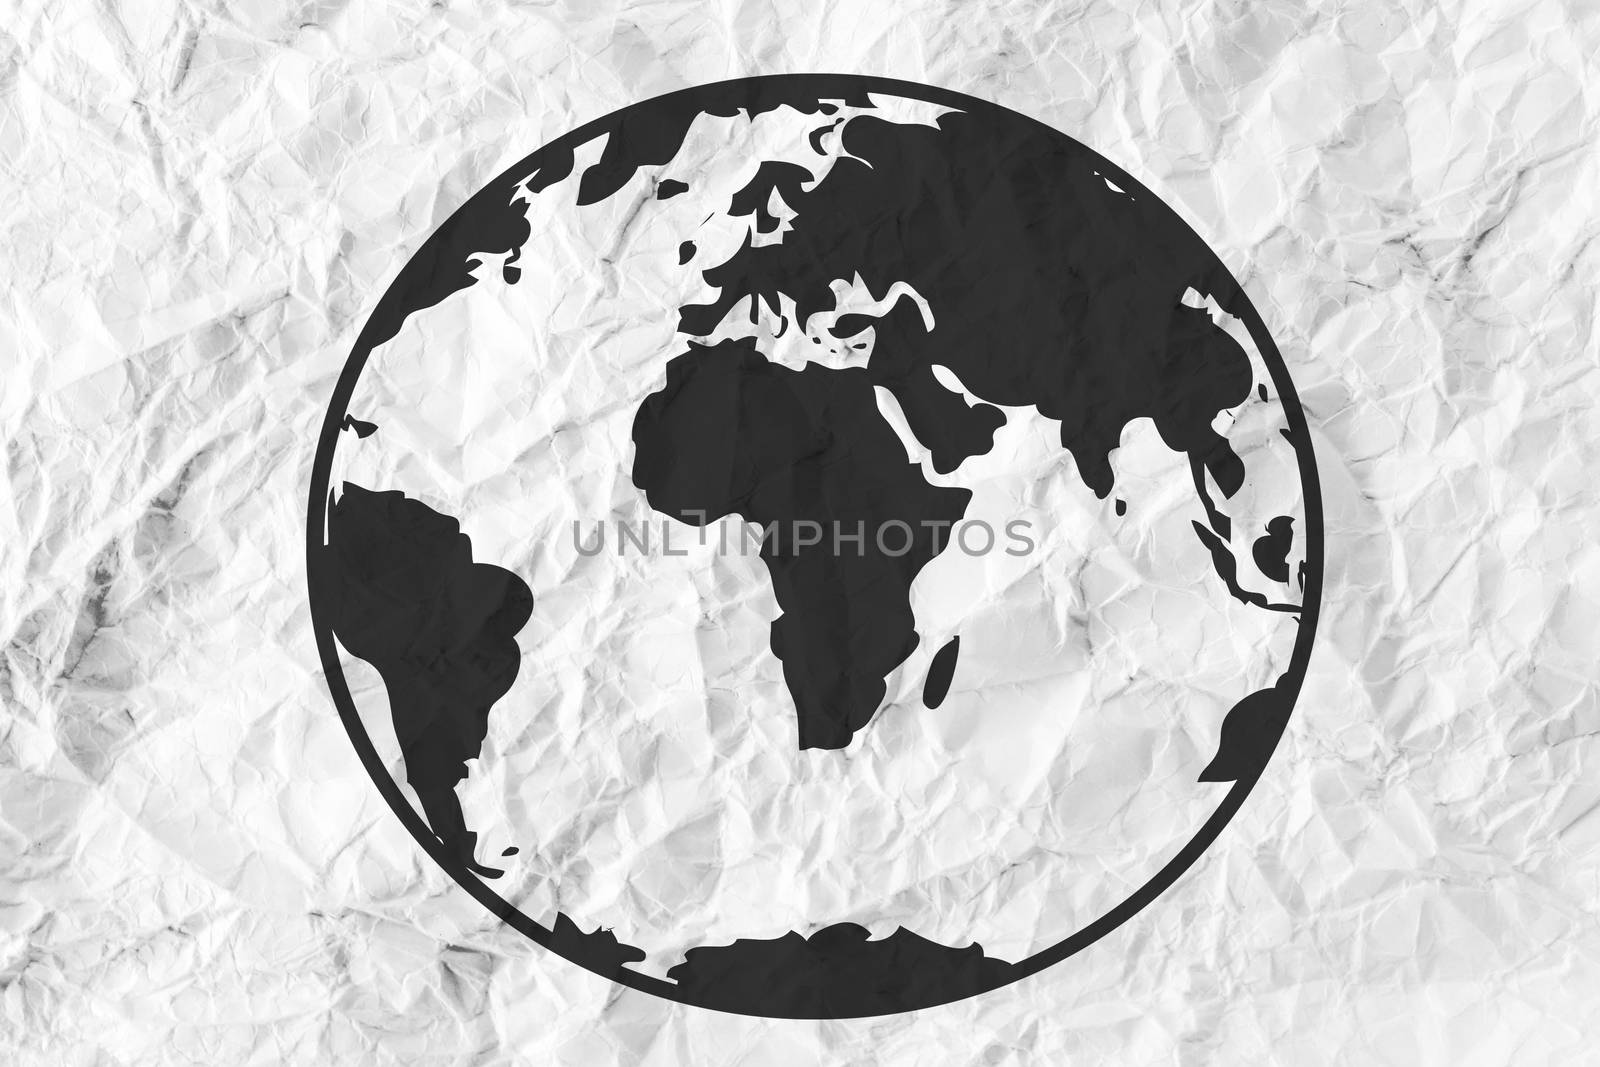 Globe earth icons themes idea design